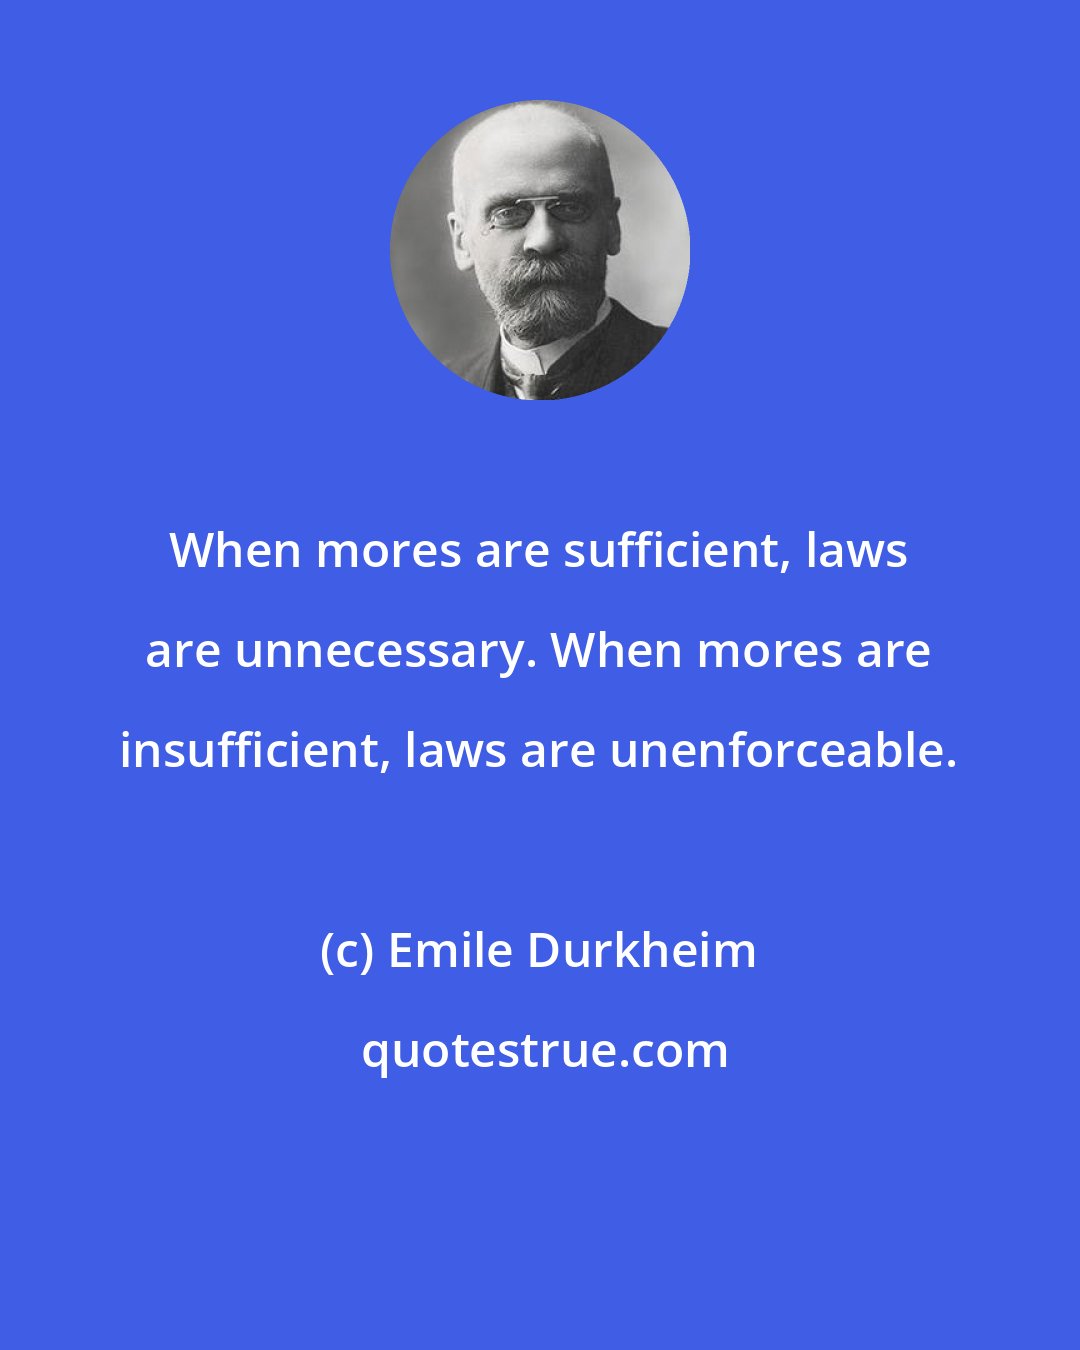 Emile Durkheim: When mores are sufficient, laws are unnecessary. When mores are insufficient, laws are unenforceable.